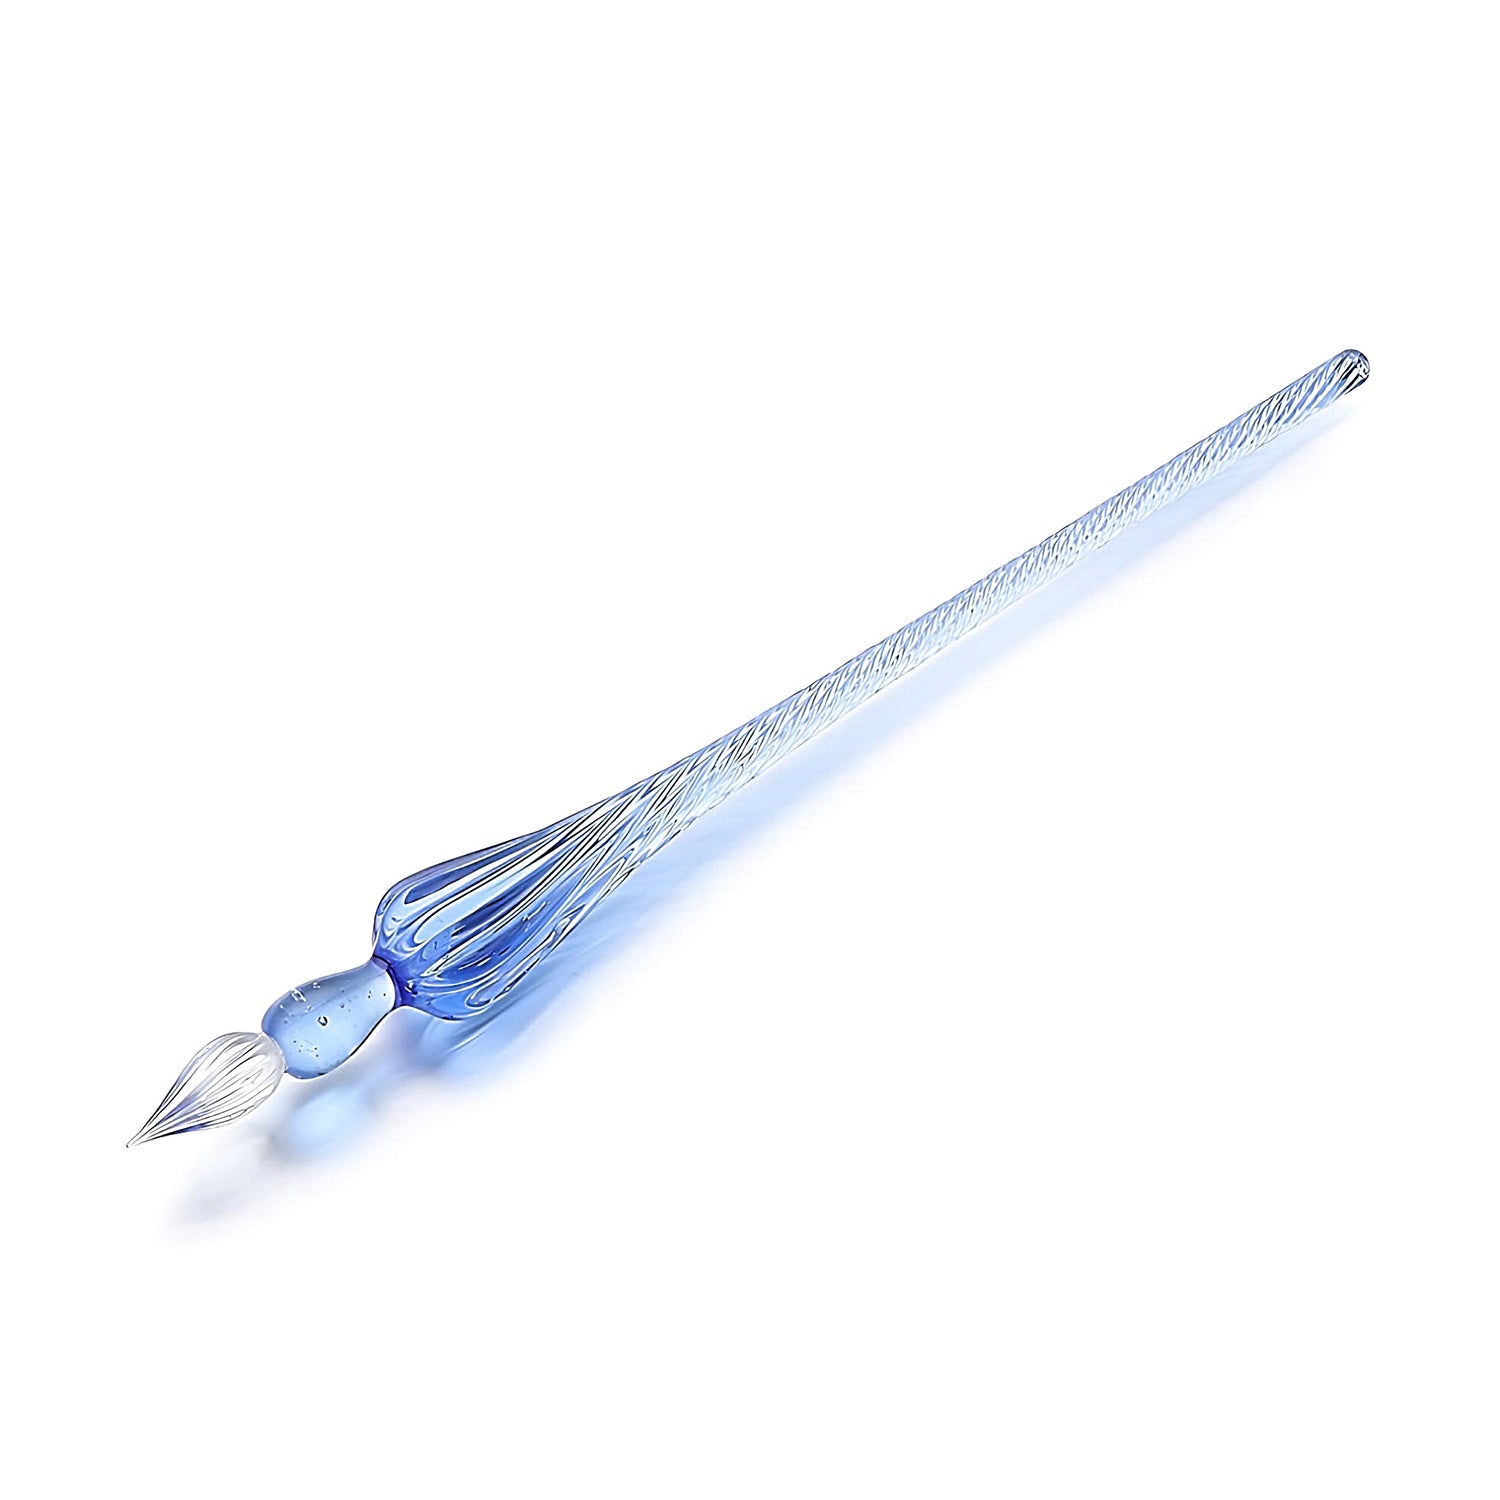 a blue glass dip pen